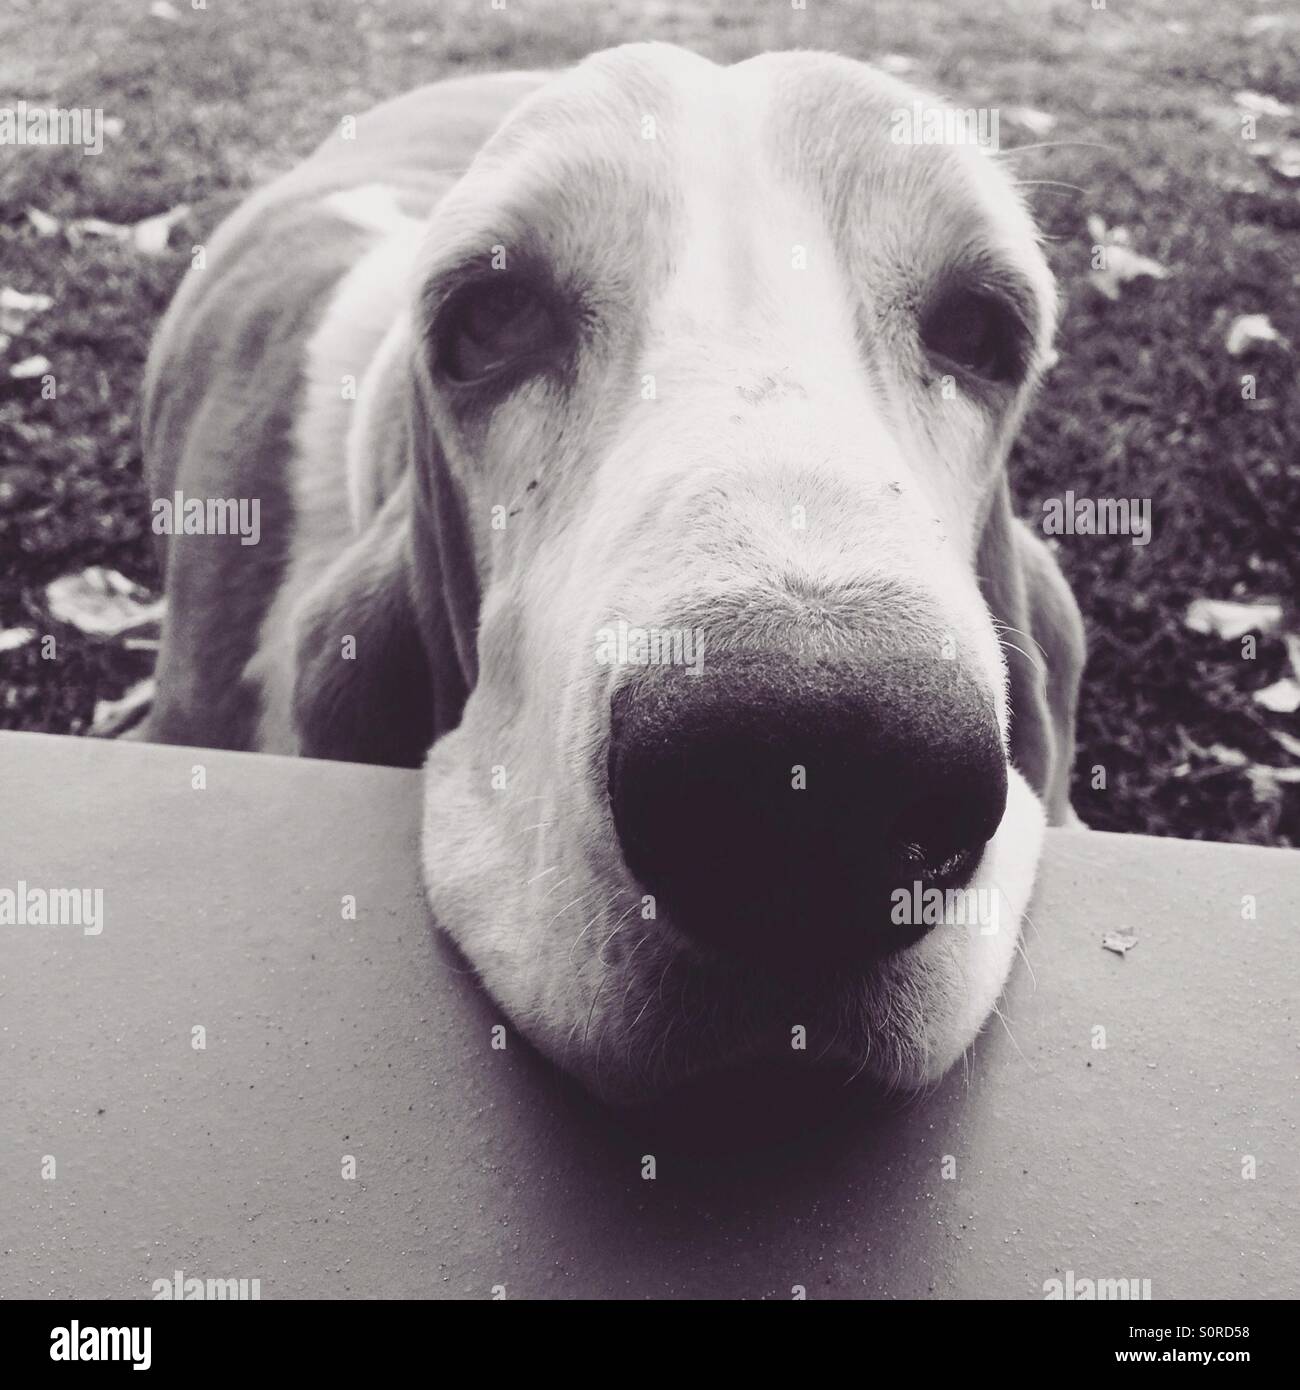 Sad basset dog face Stock Photo